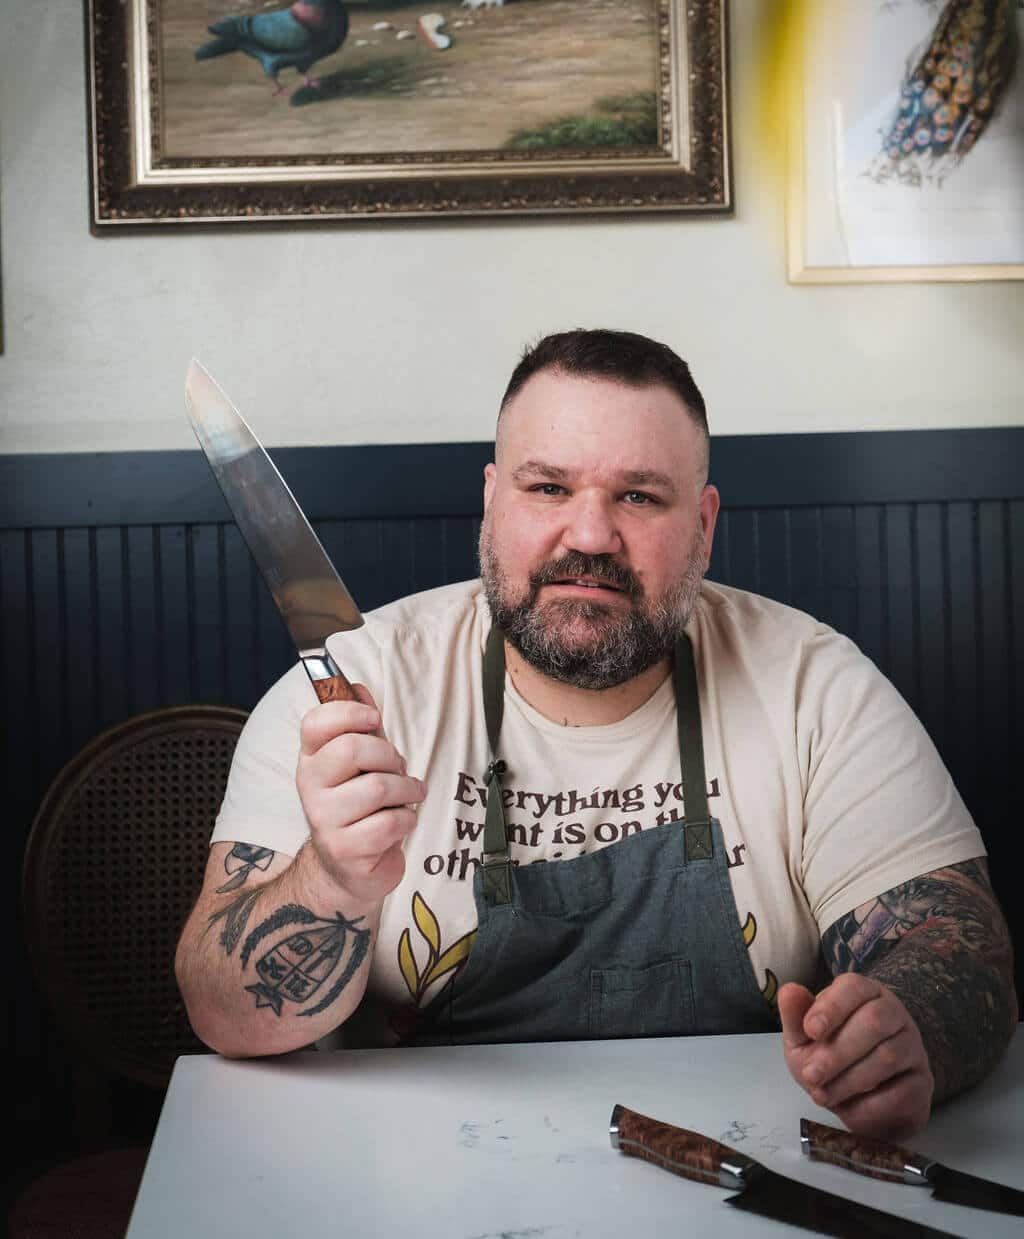 Chef Aaron Adams holding STEELPORT 8" Carbon Steel Chef Knife